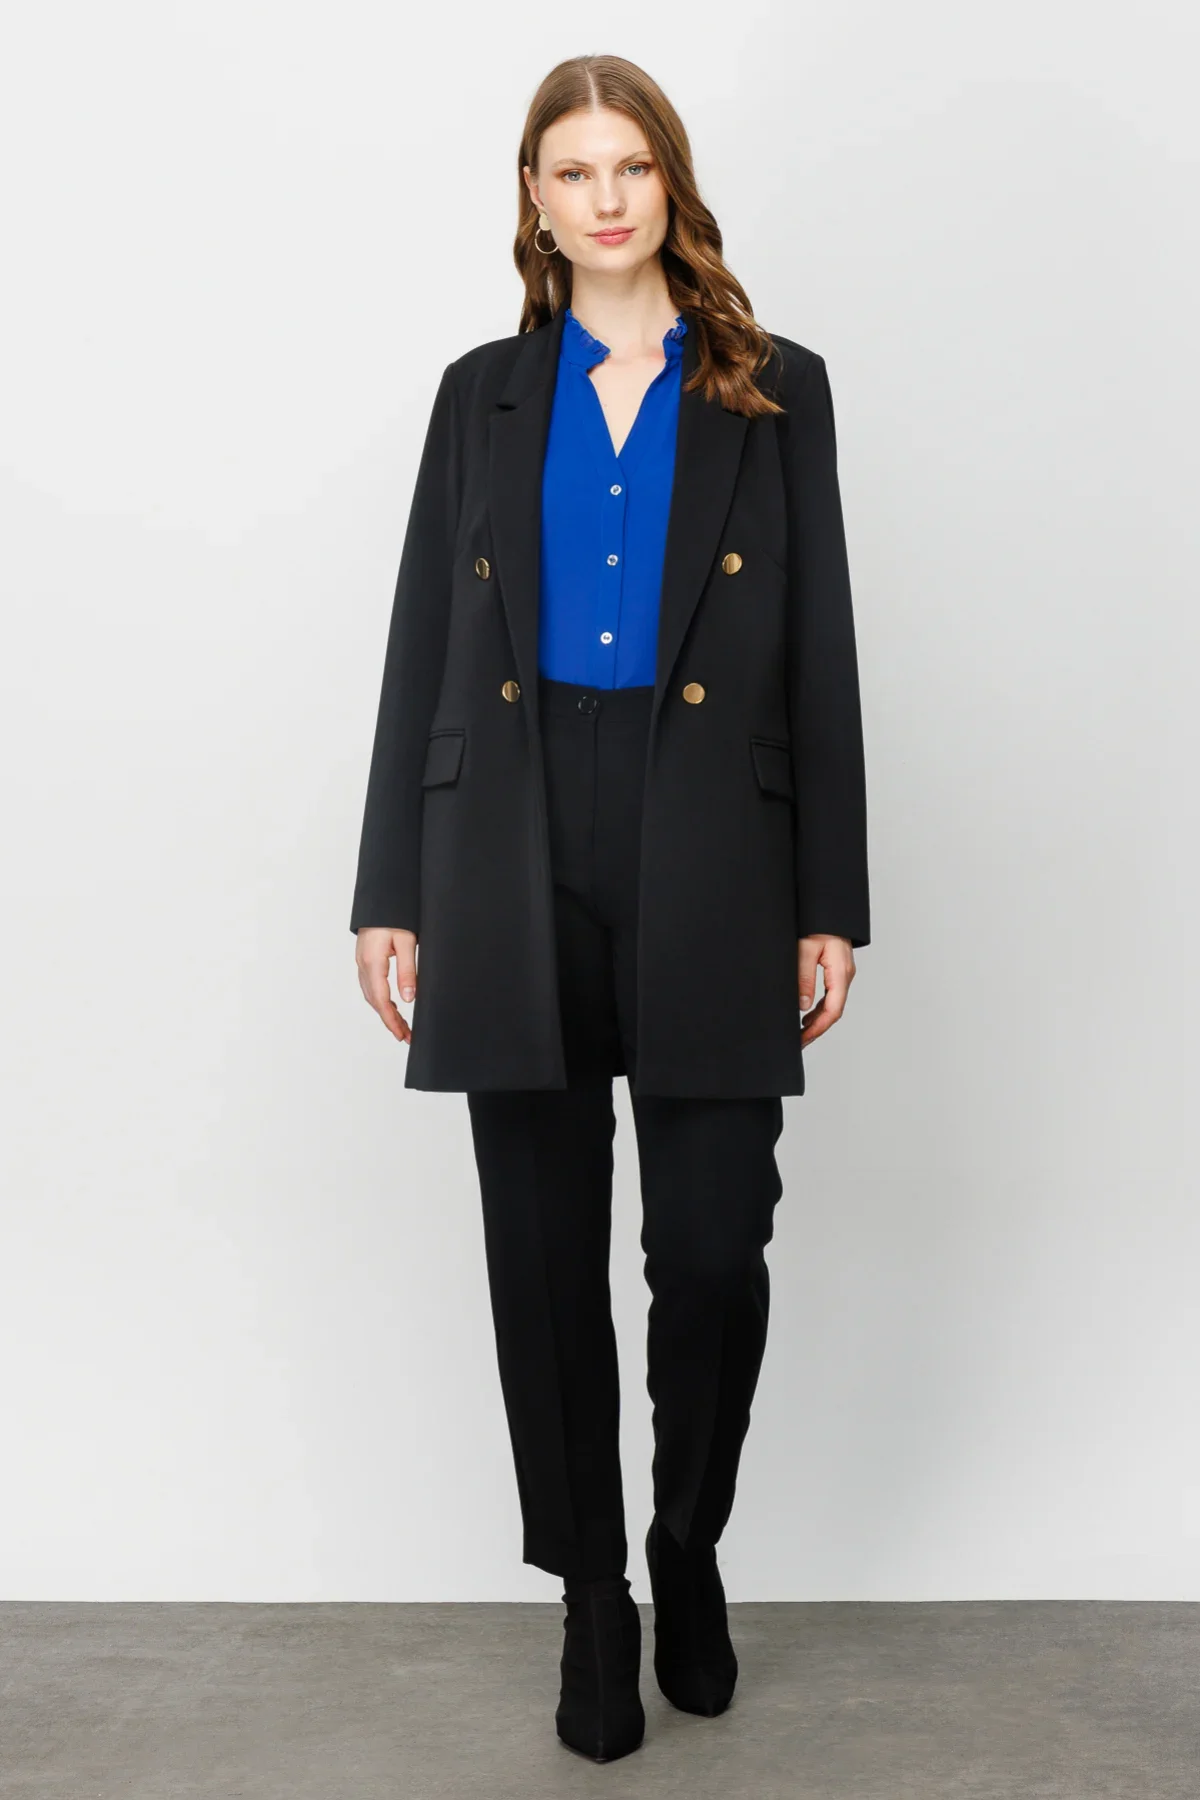 Kadın Uzun Blazer Ceket - Siyah - 1